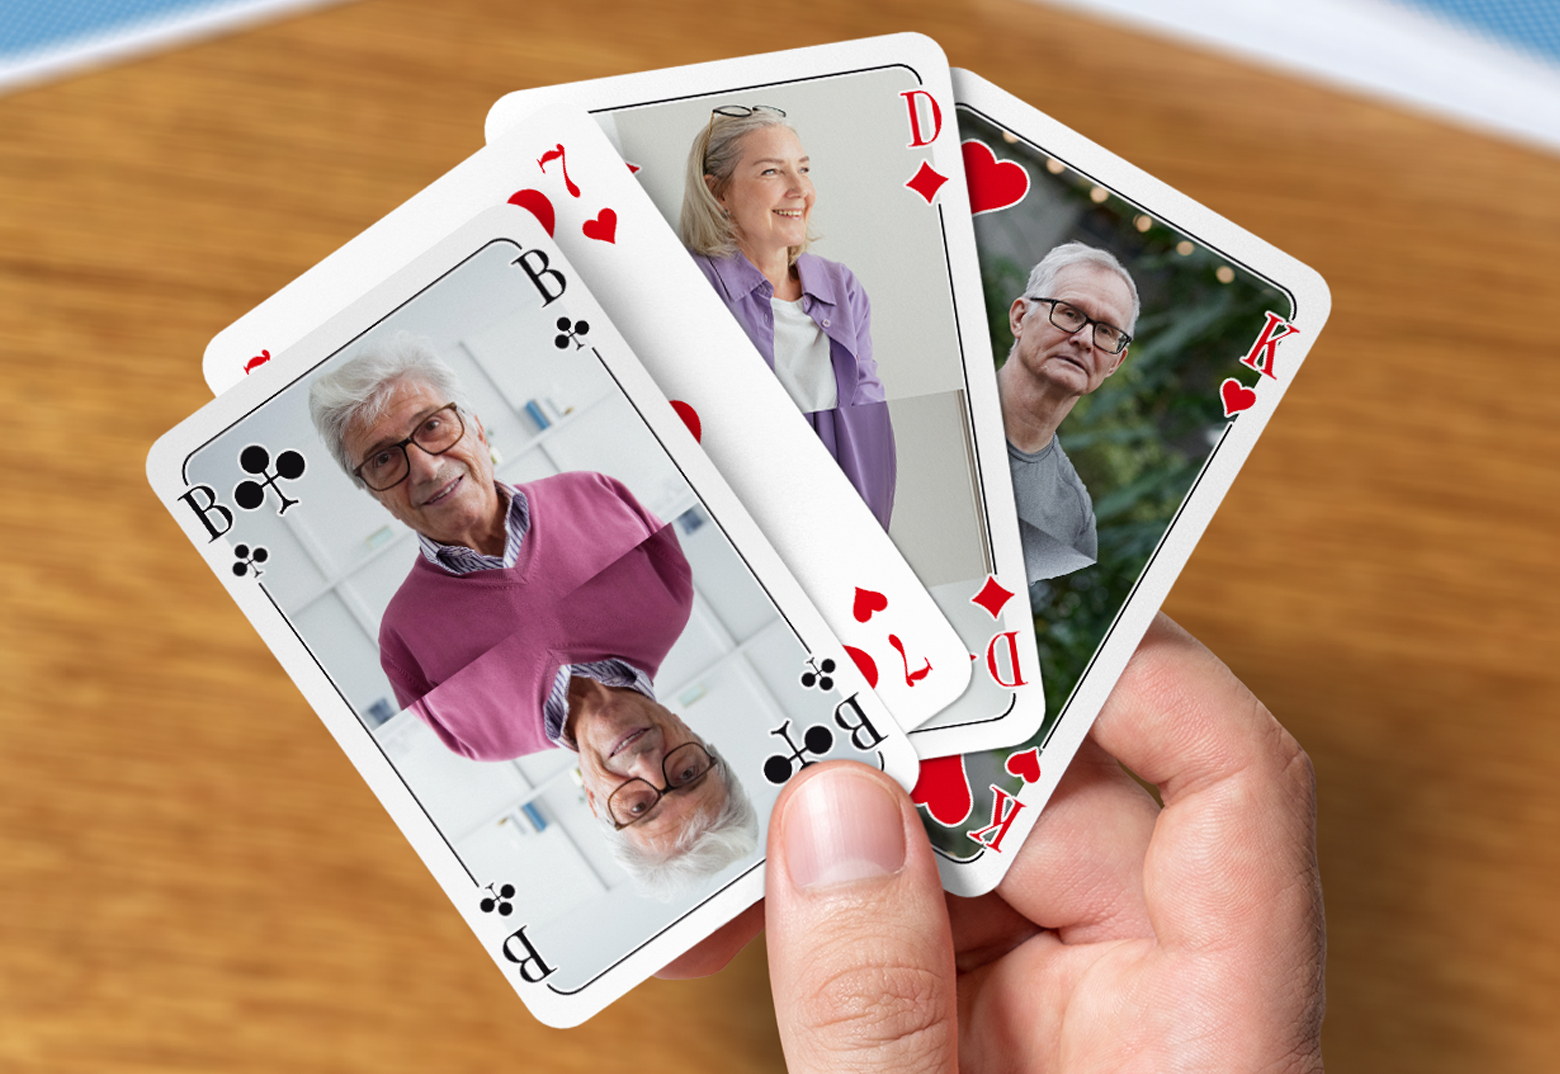 Selbst gestaltete Poker Karten wurden bei MeinSpiel gedruckt und von einer Hand offen gehalten.